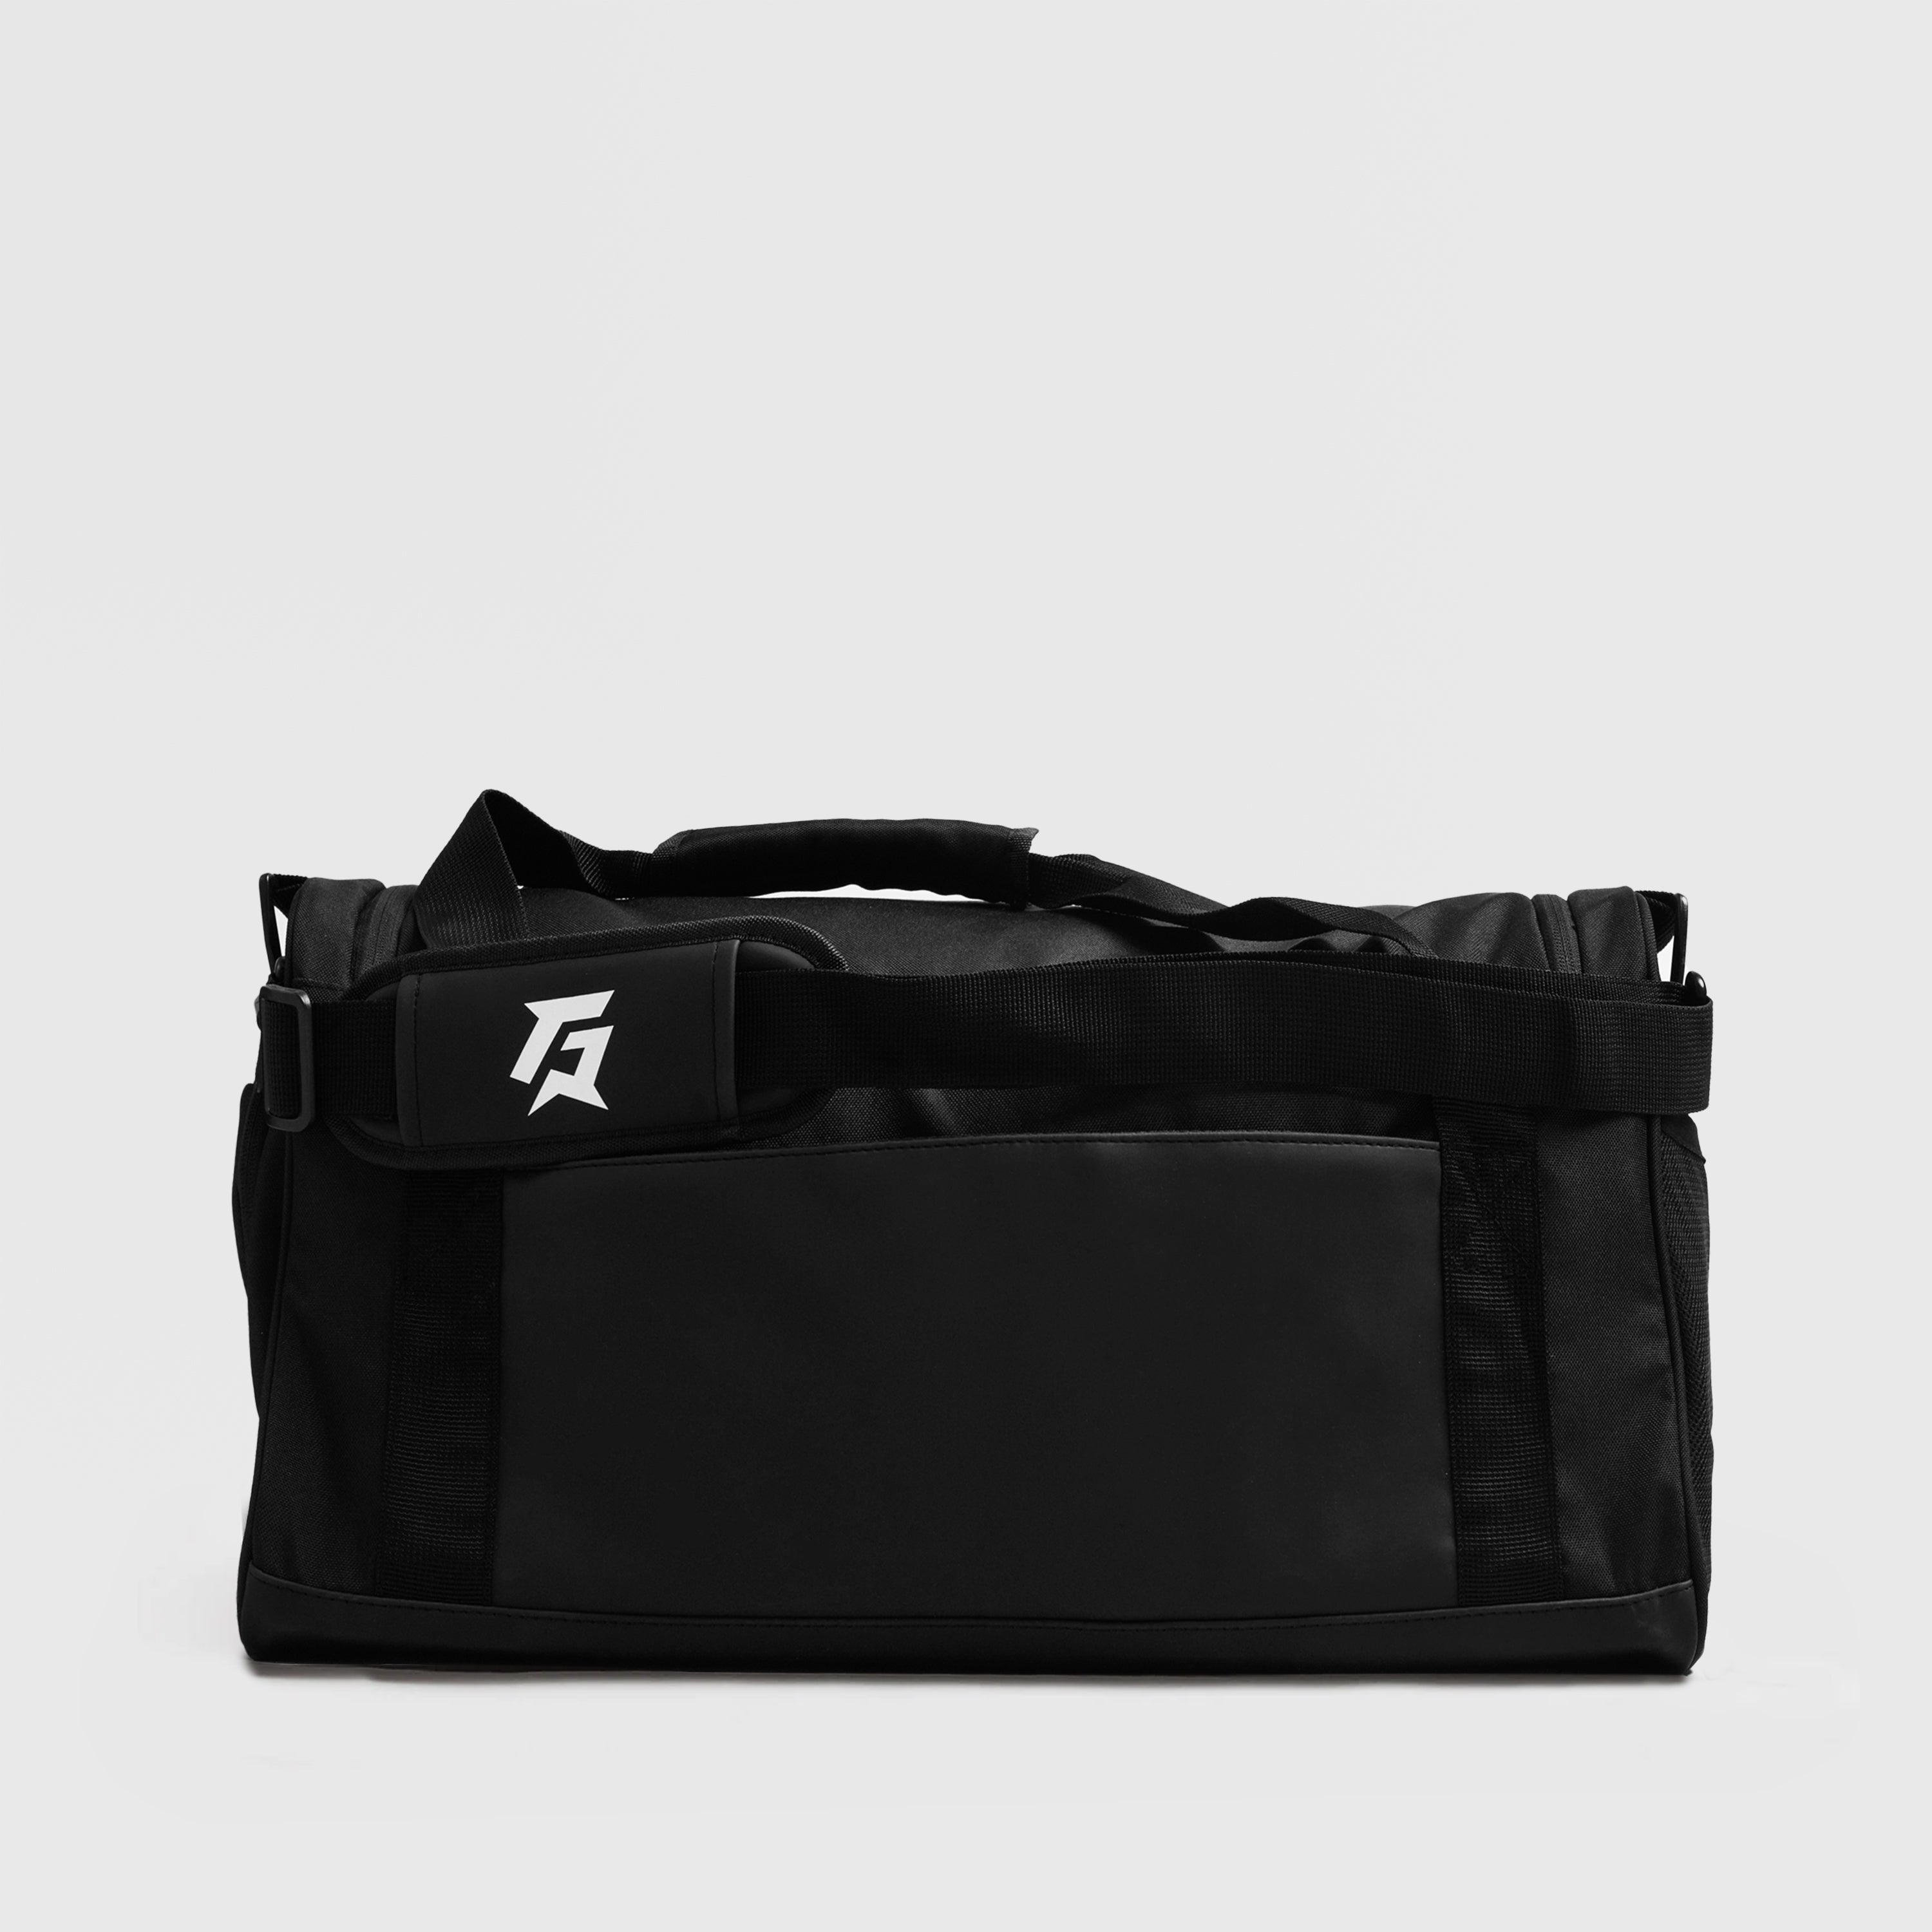 GA Duffle Bag (Black)